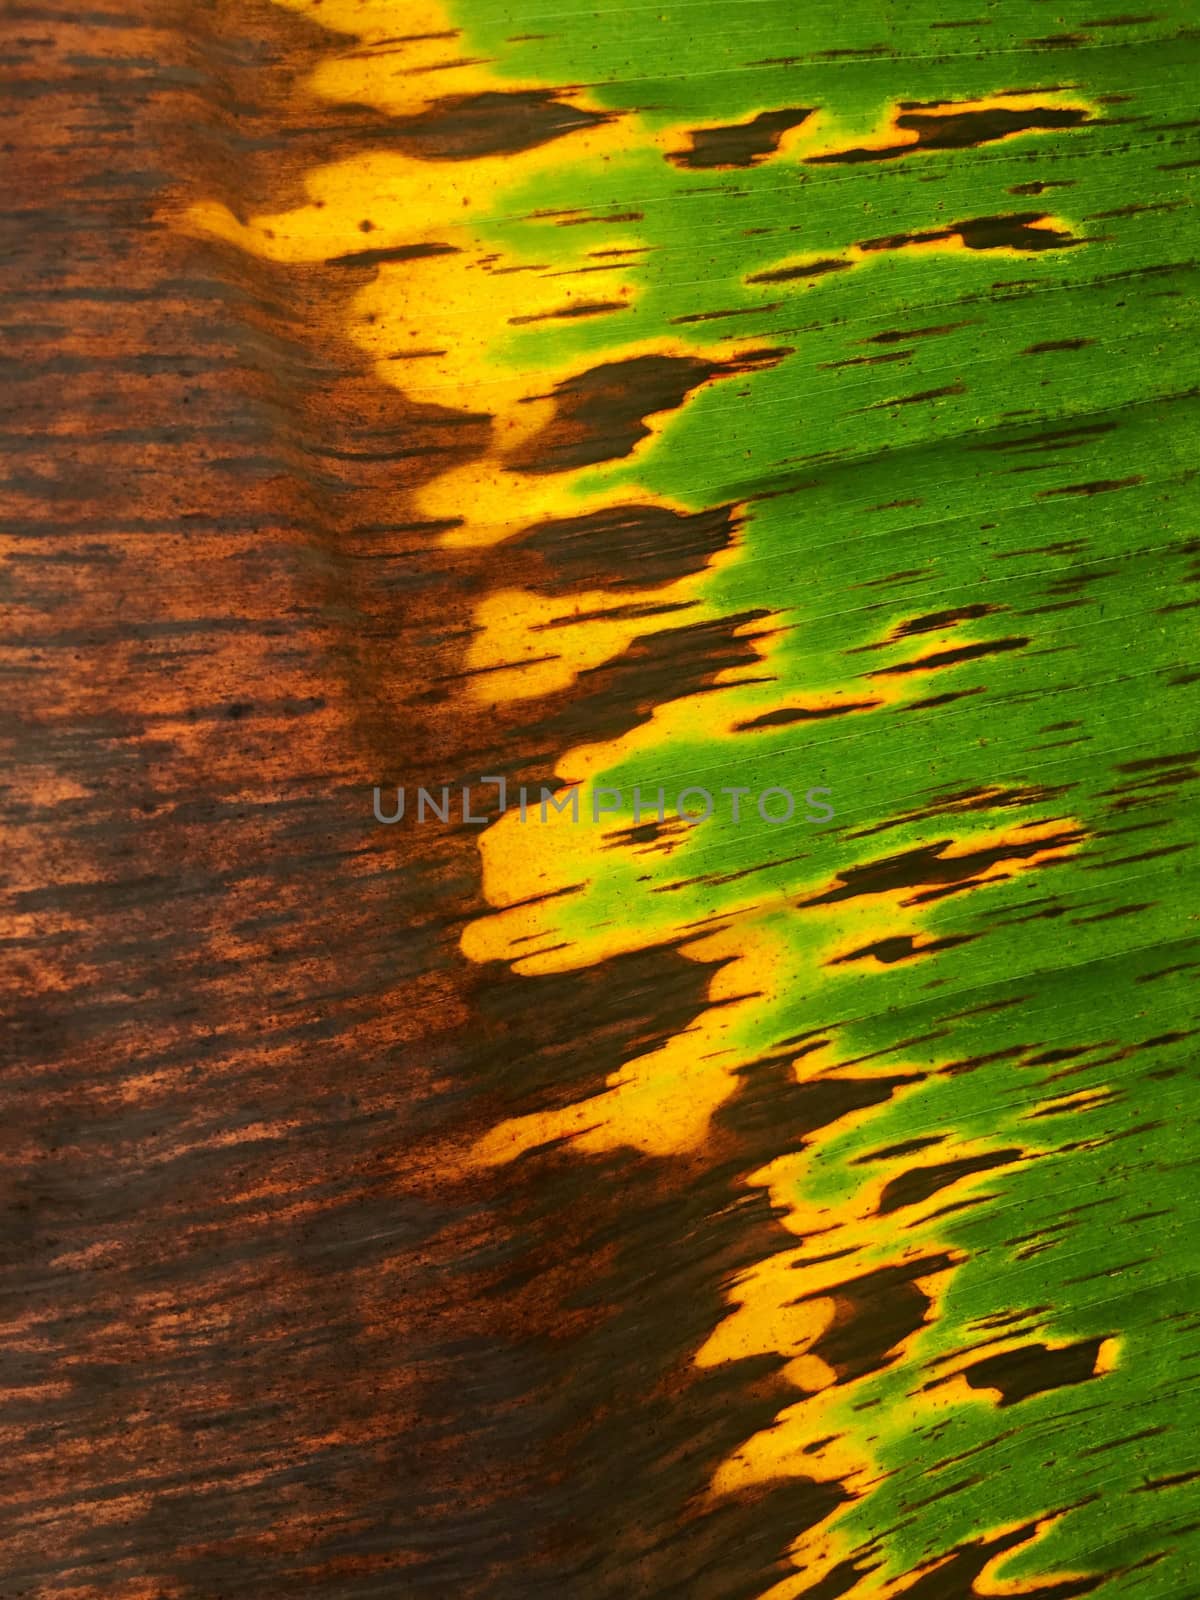 Texture on banana leaf from banana tree. by e22xua